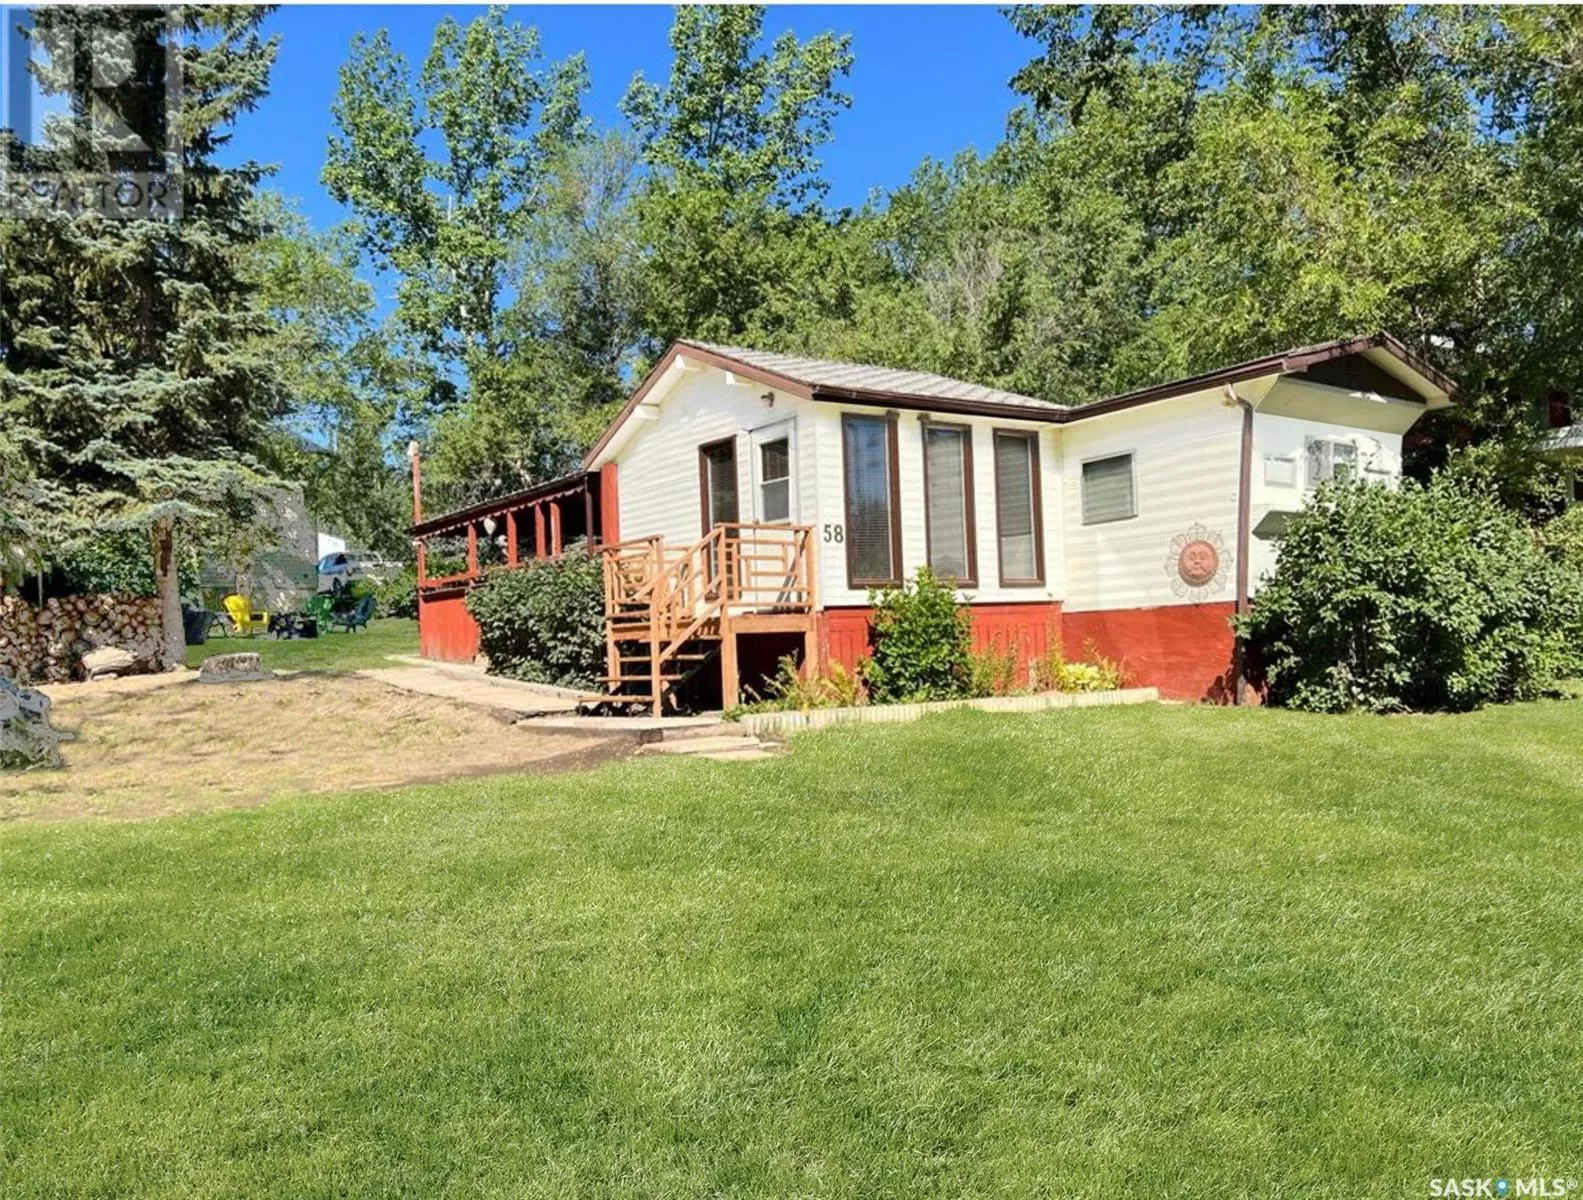 Mobile Home for rent: 58 Ferguson Bay, Ferguson Bay, Saskatchewan S0N 2N0